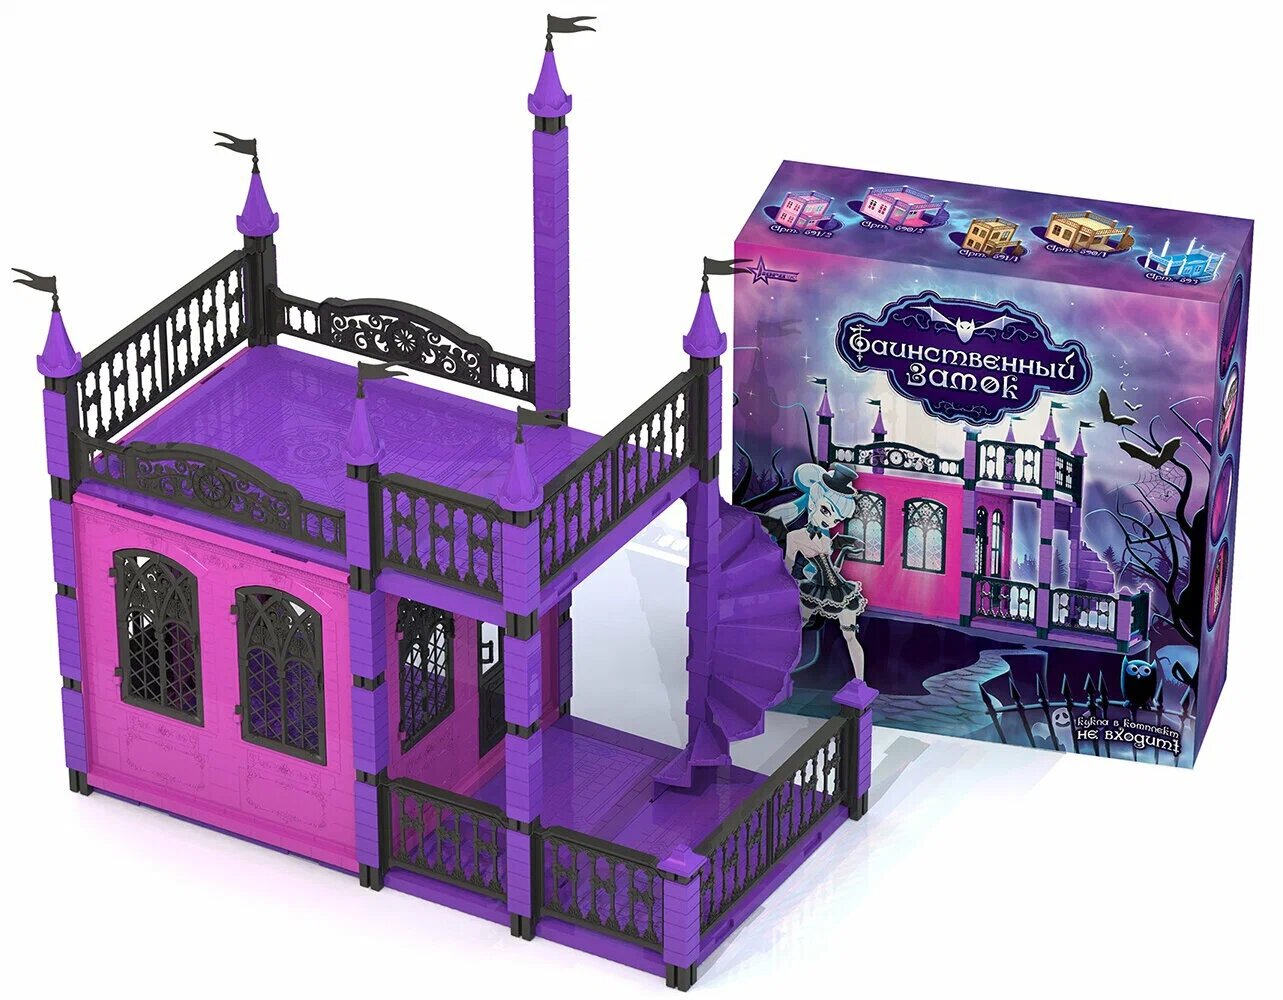 Нордпласт Таинственный замок 594, фиолетовый